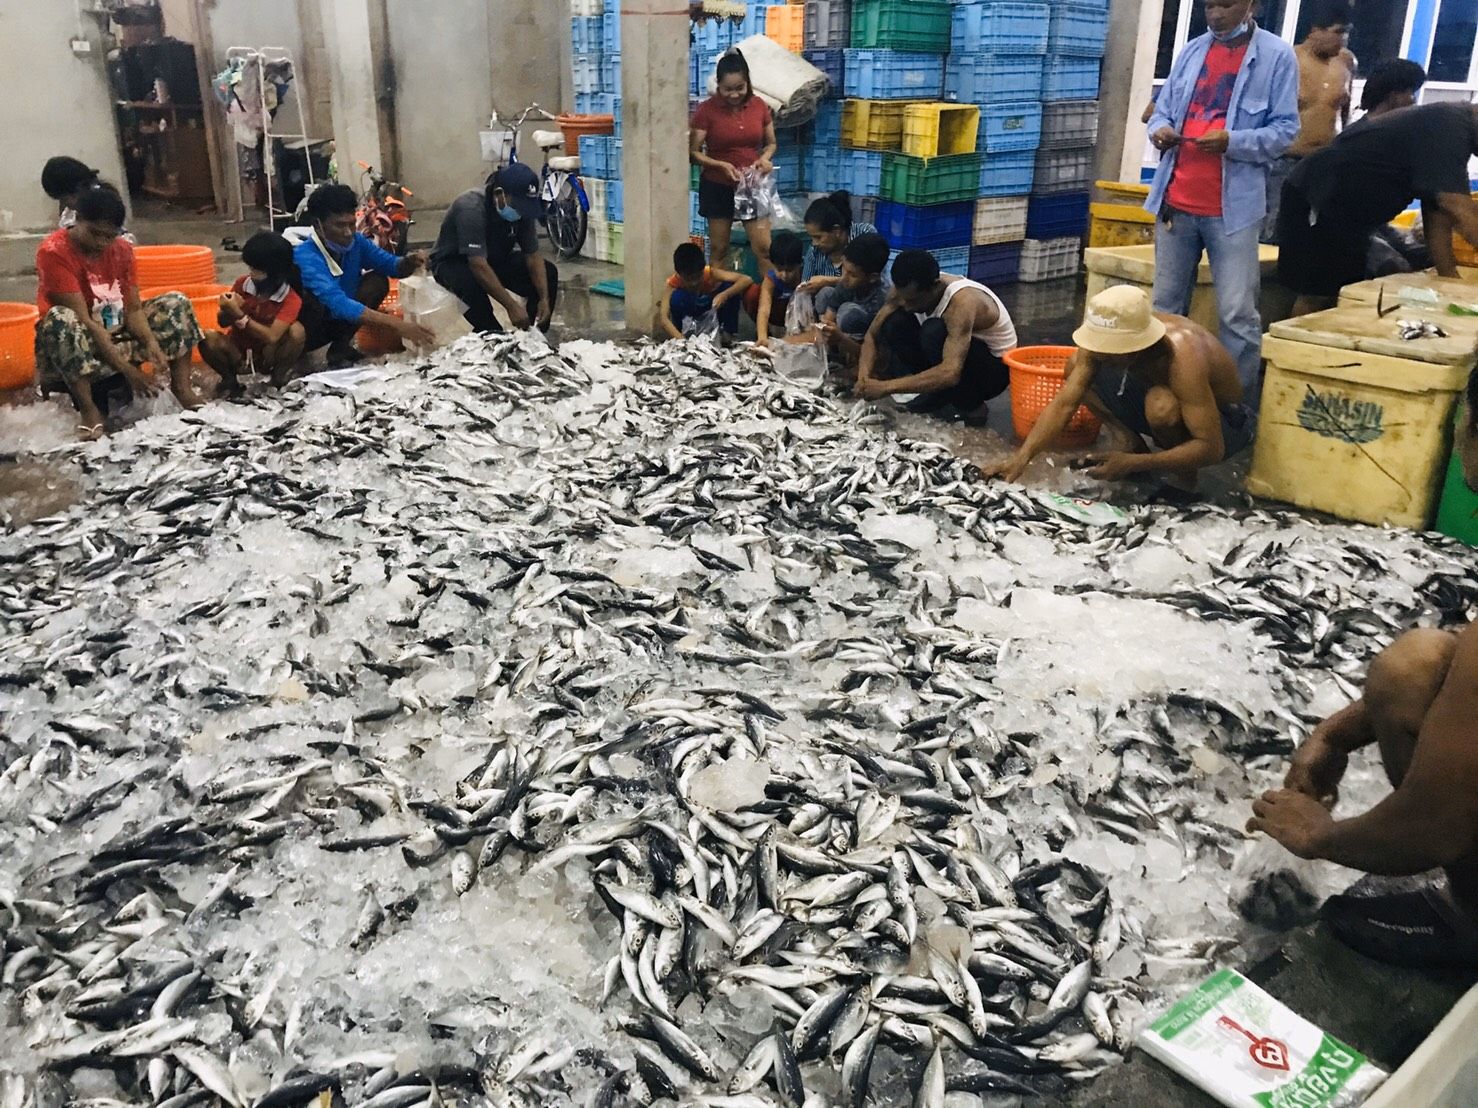 ช่วยเพื่อนบ้าน แพปลาระนอง ขนปลาสด 2.8 ตัน แจกชาวบ้านในจ.พังงา